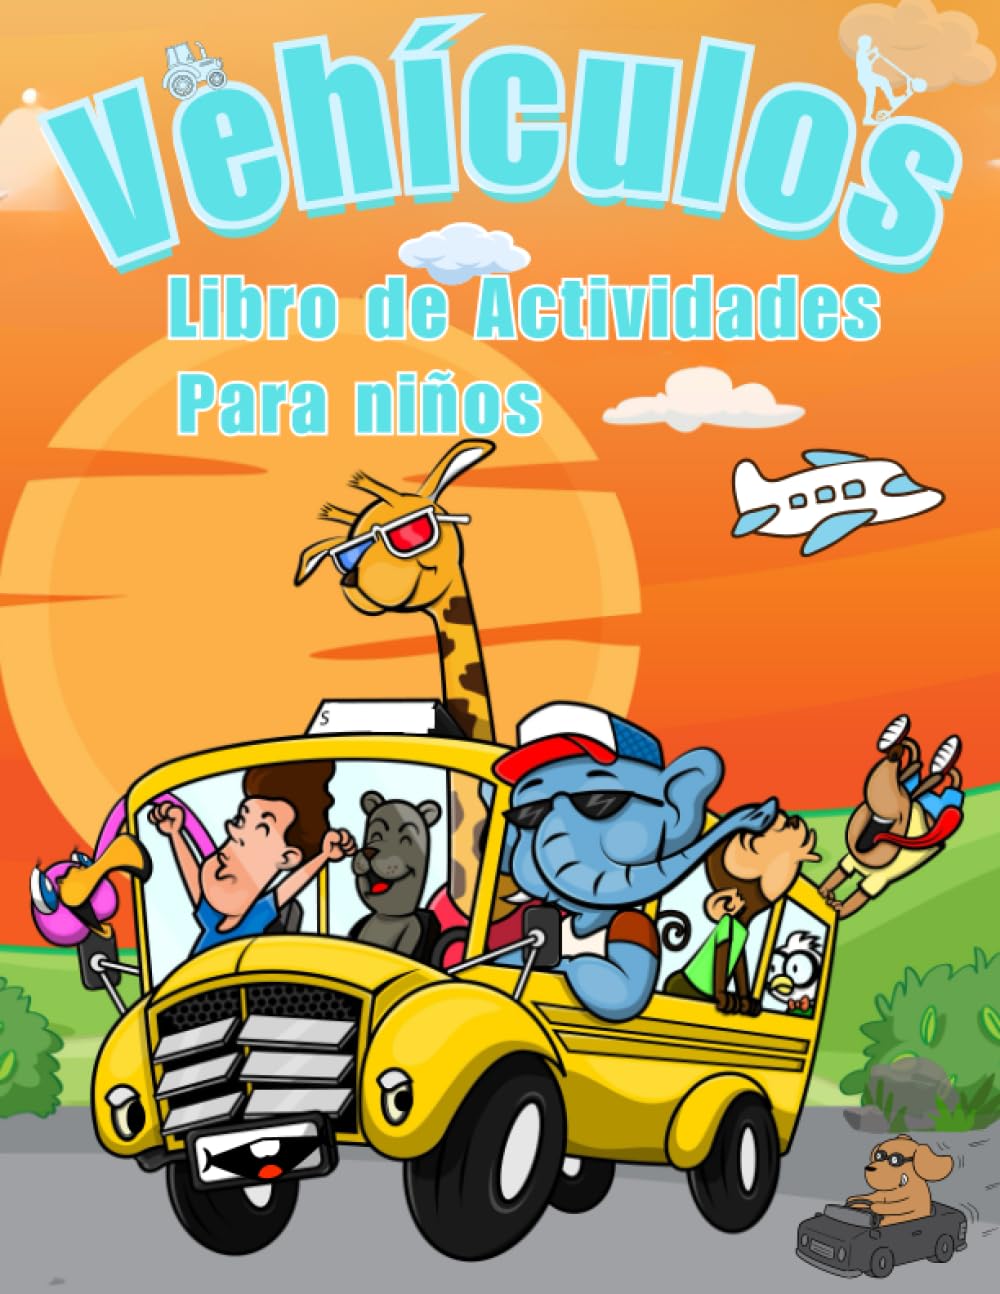 Libro: Libro de actividades de vehículos para niños por Smarrov Emma